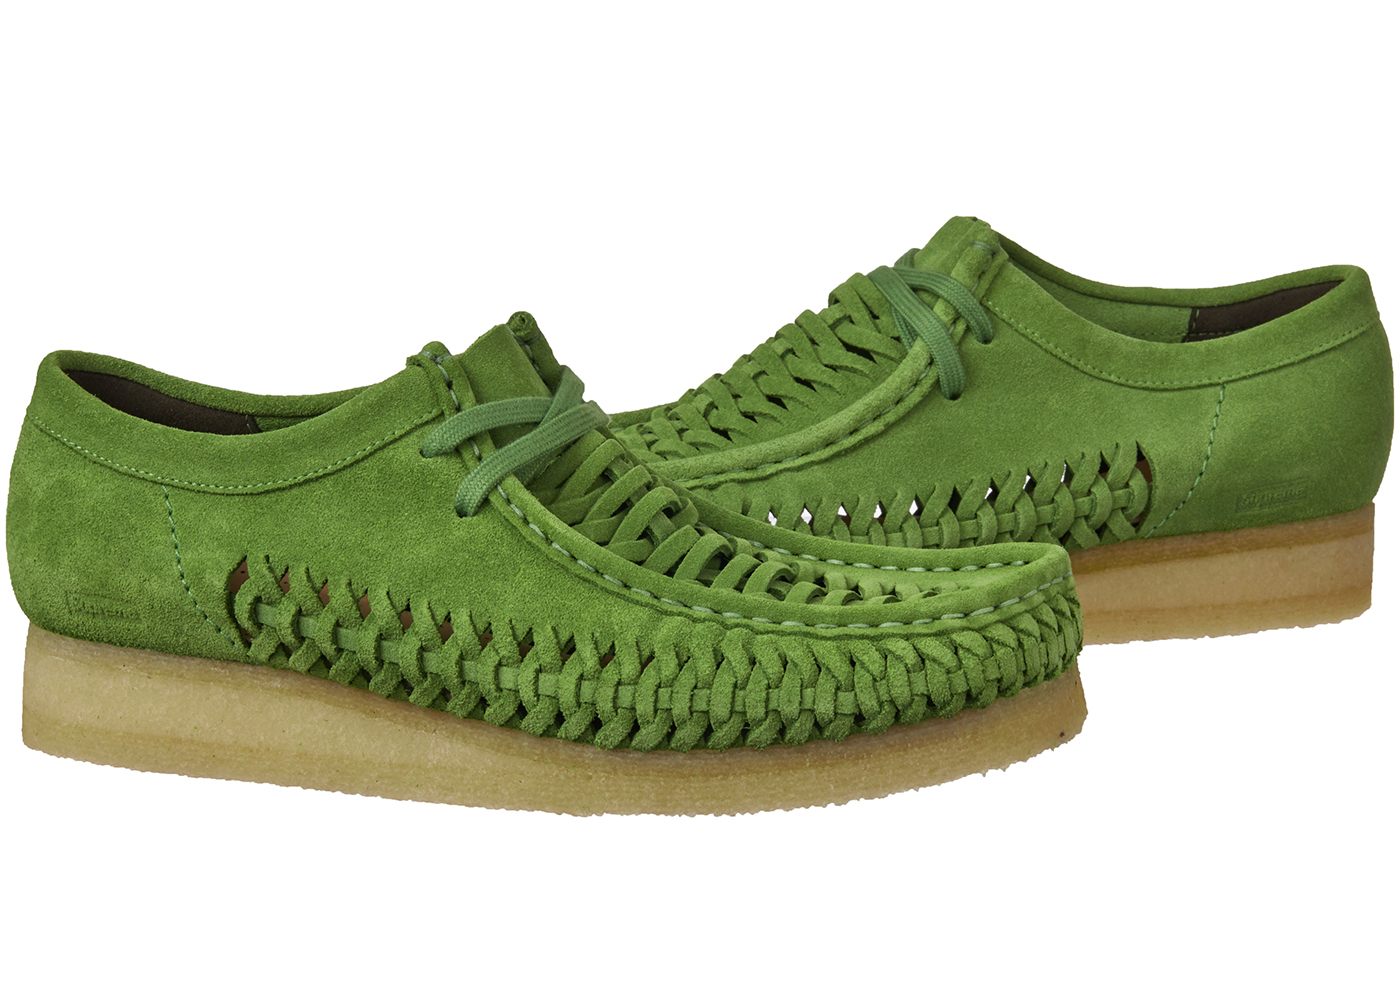 Clarks Originals Woven Wallabee Supreme Green Men's - Sneakers - US